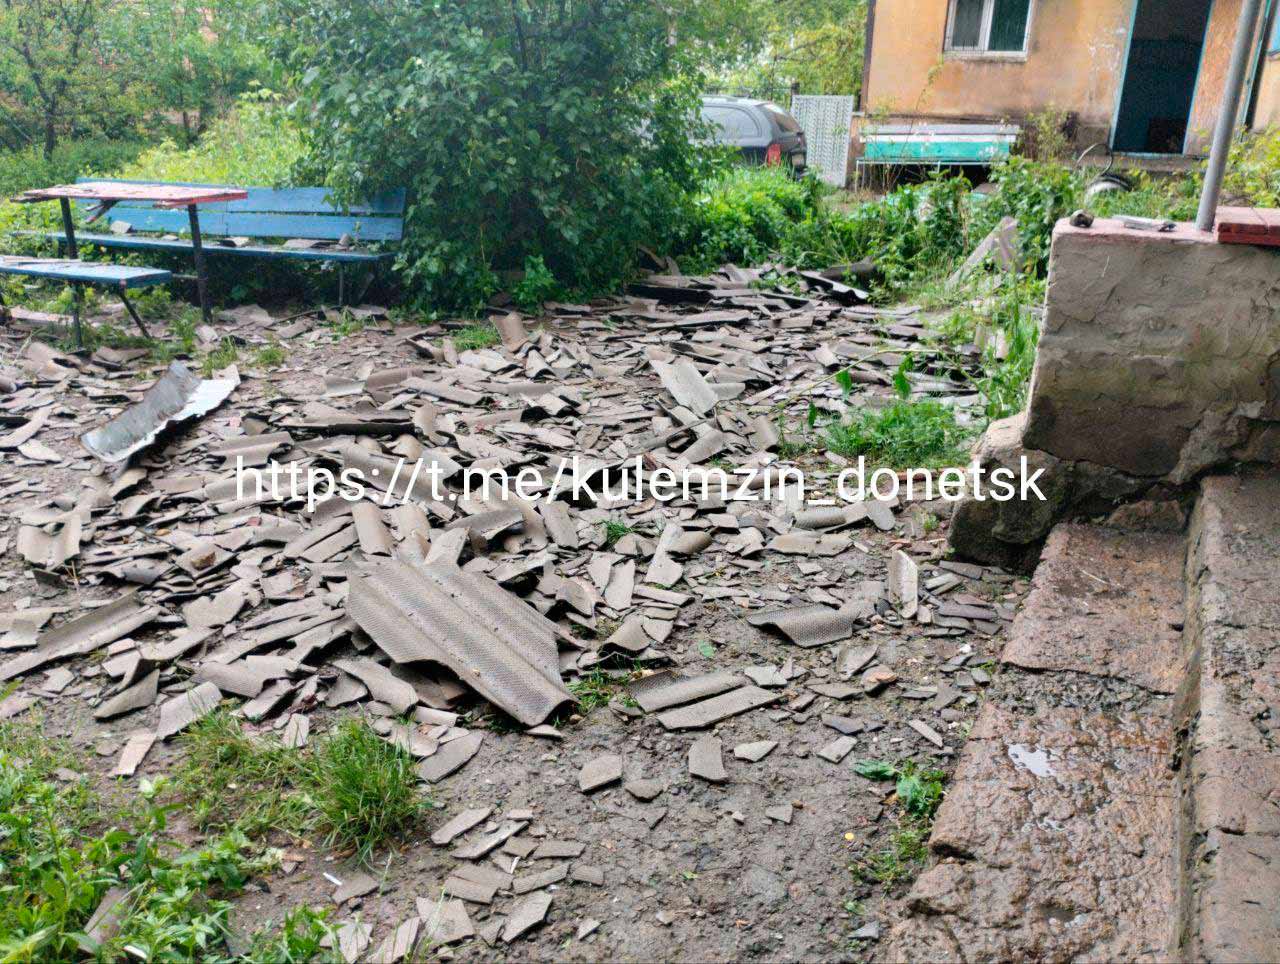 Утром был обстрелян Киевский район Донецка